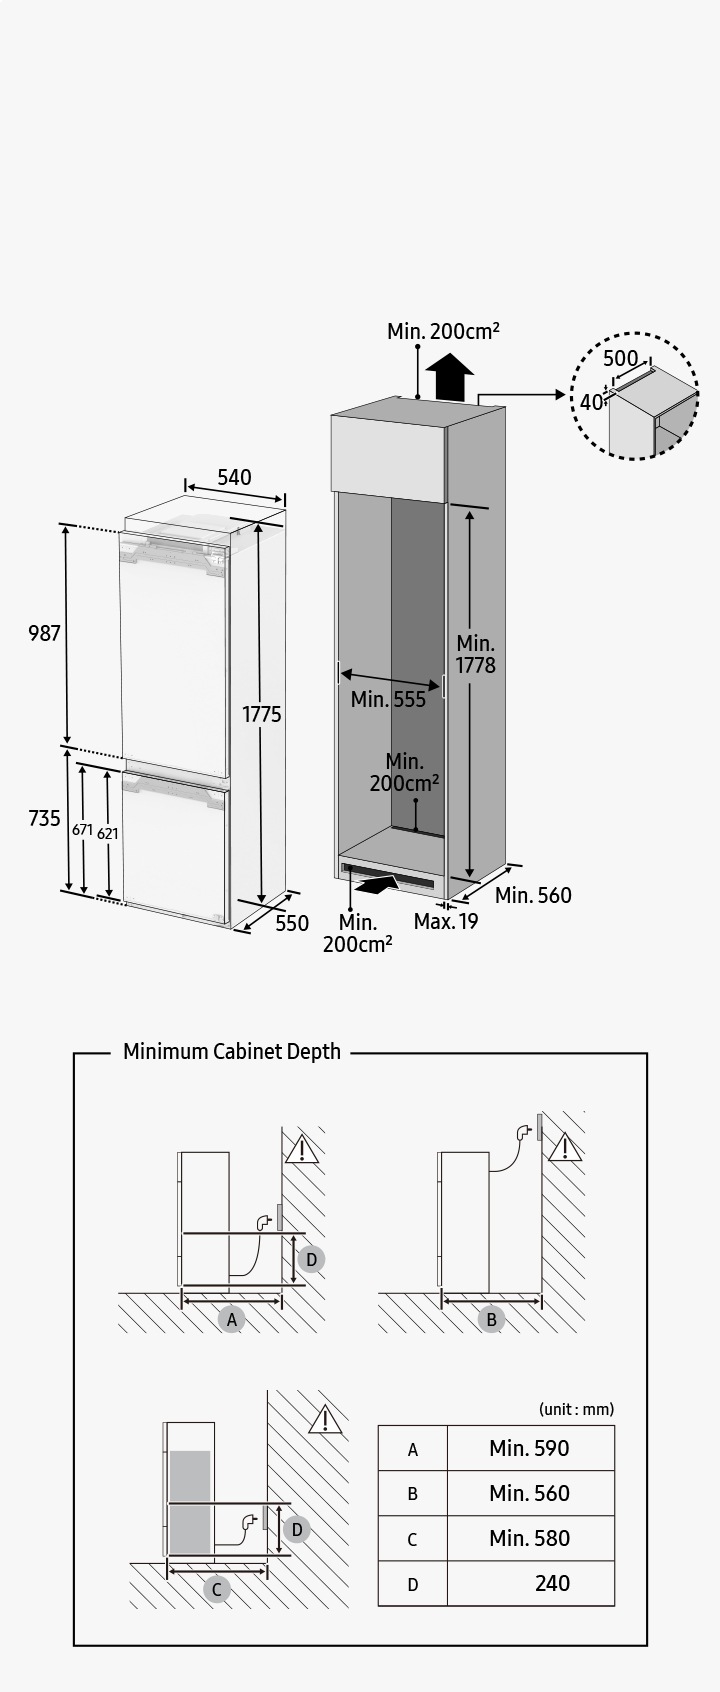 Samsung BRB26605DWW/EF Einbaukühlschrank mit gefrierfach cm. 54 std. 177 -  lt. 264